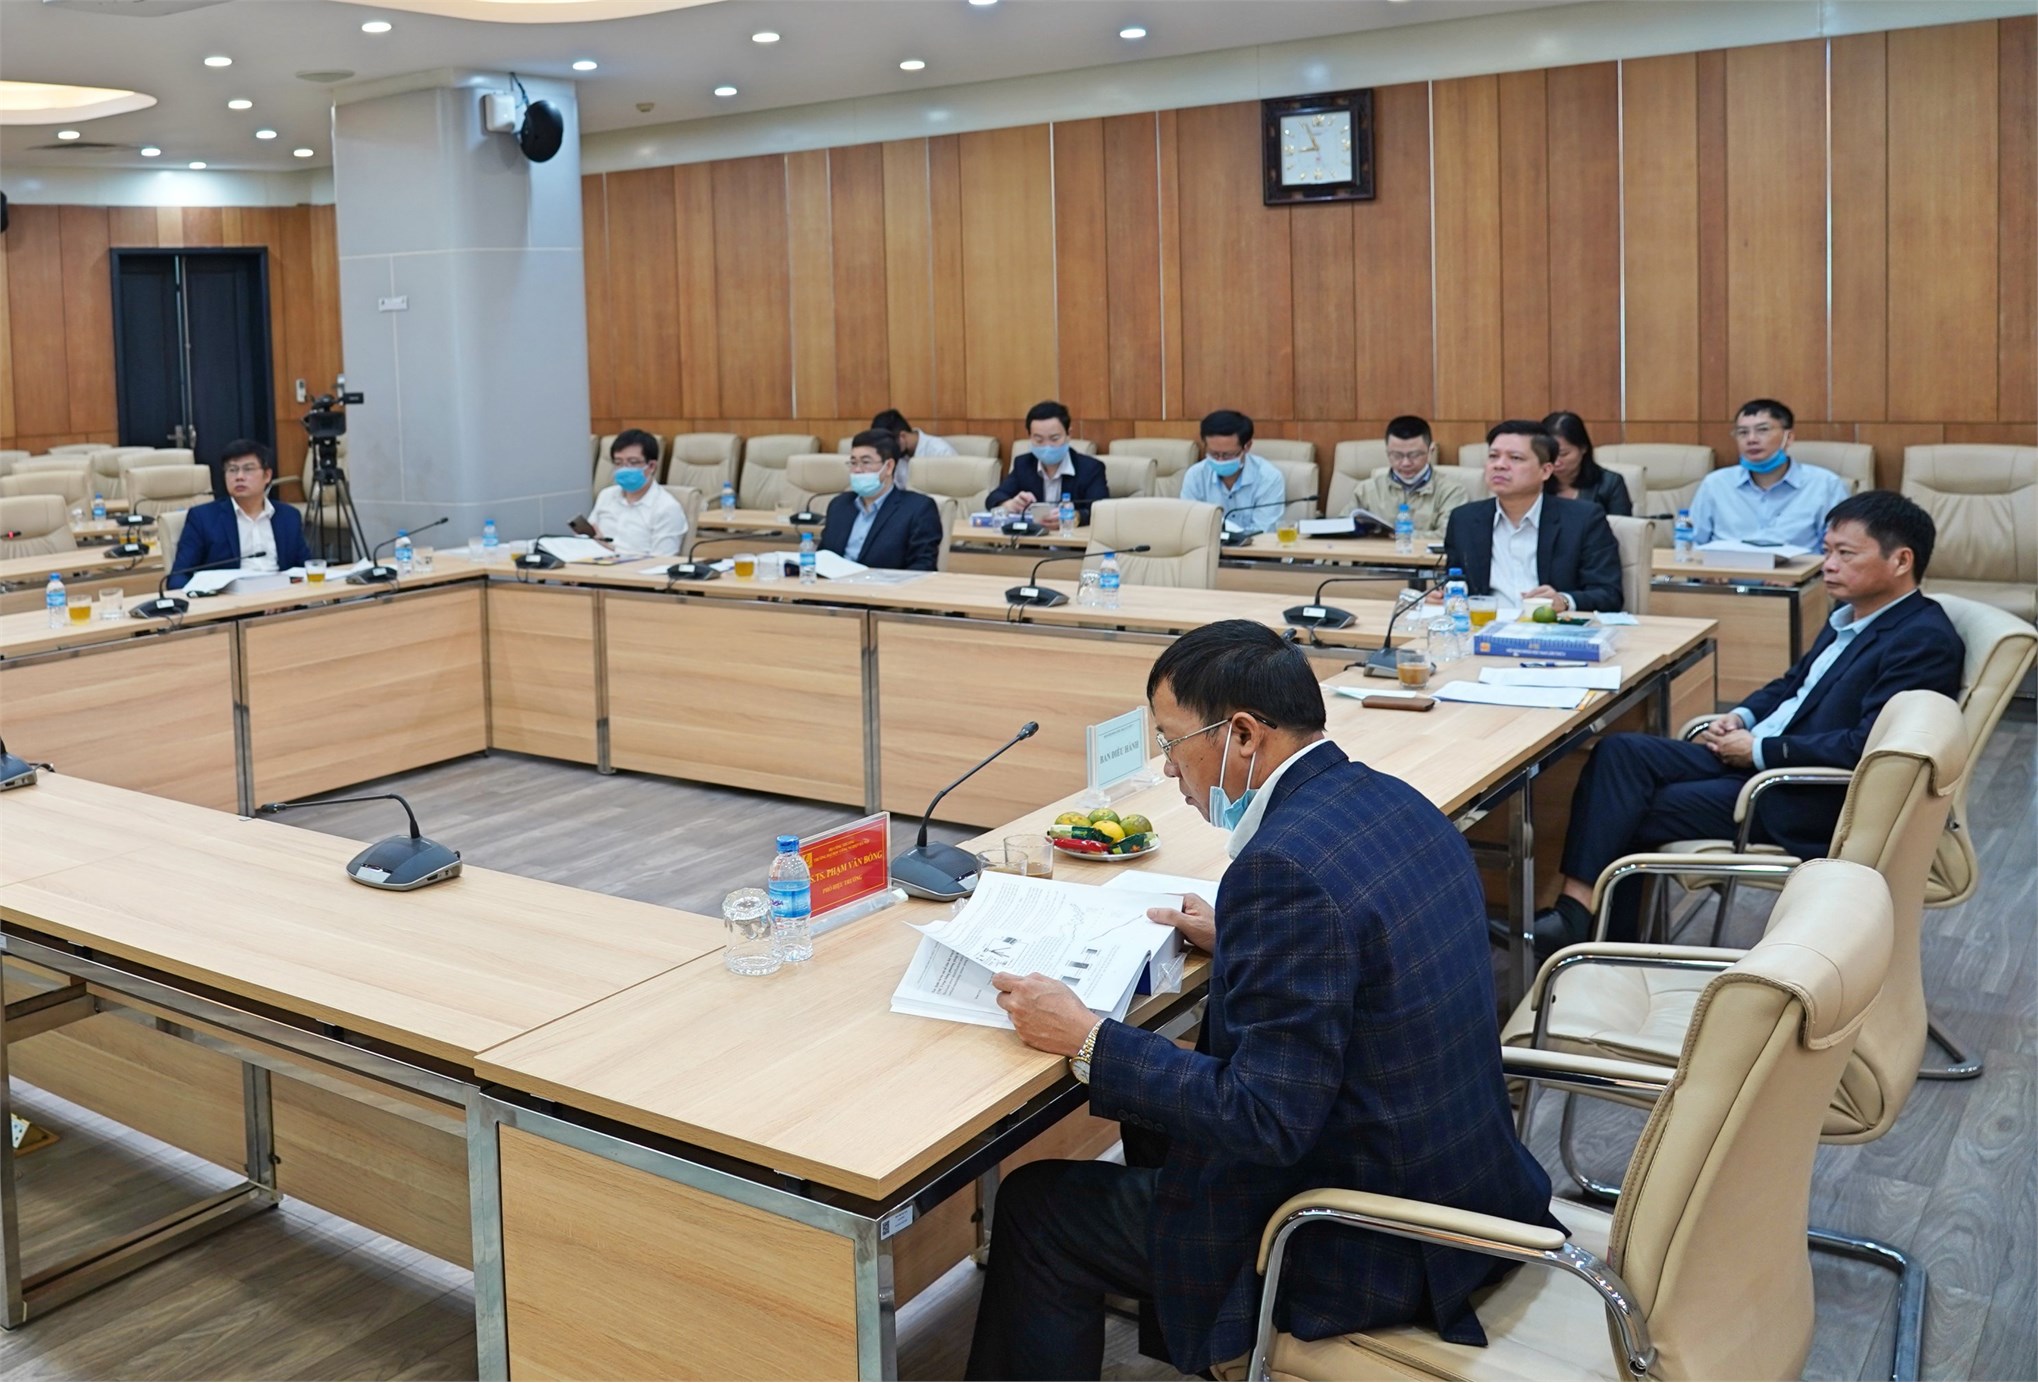 Trường Đại học Công nghiệp Hà Nội tổ chức Hội nghị Khoa học HaUI lần thứ V